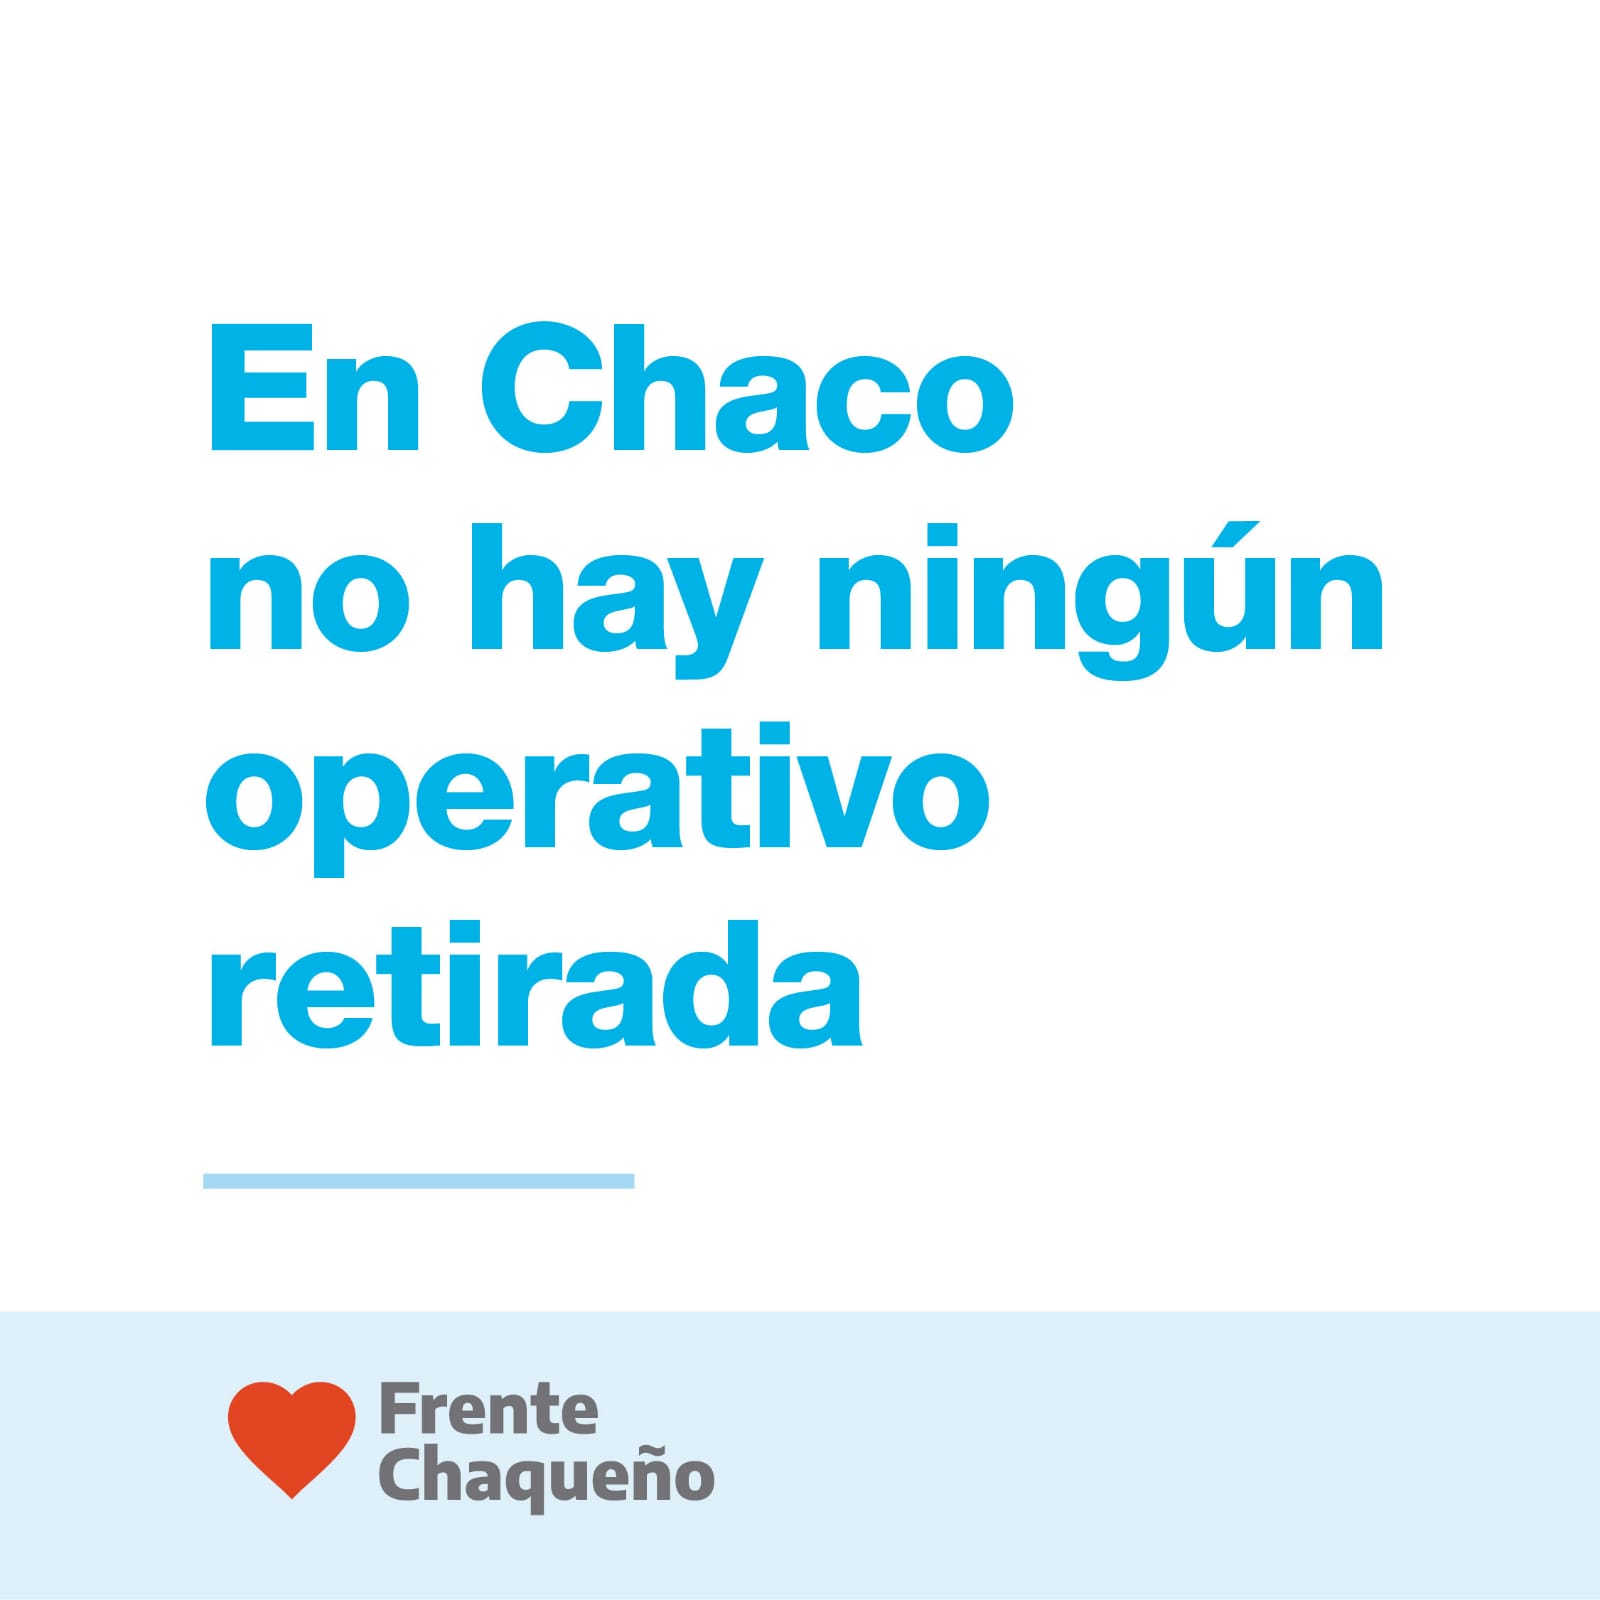 Legisladores y legisladoras del Frente Chaqueño aseguraron que “en Chaco no hay ningún operativo retirada”